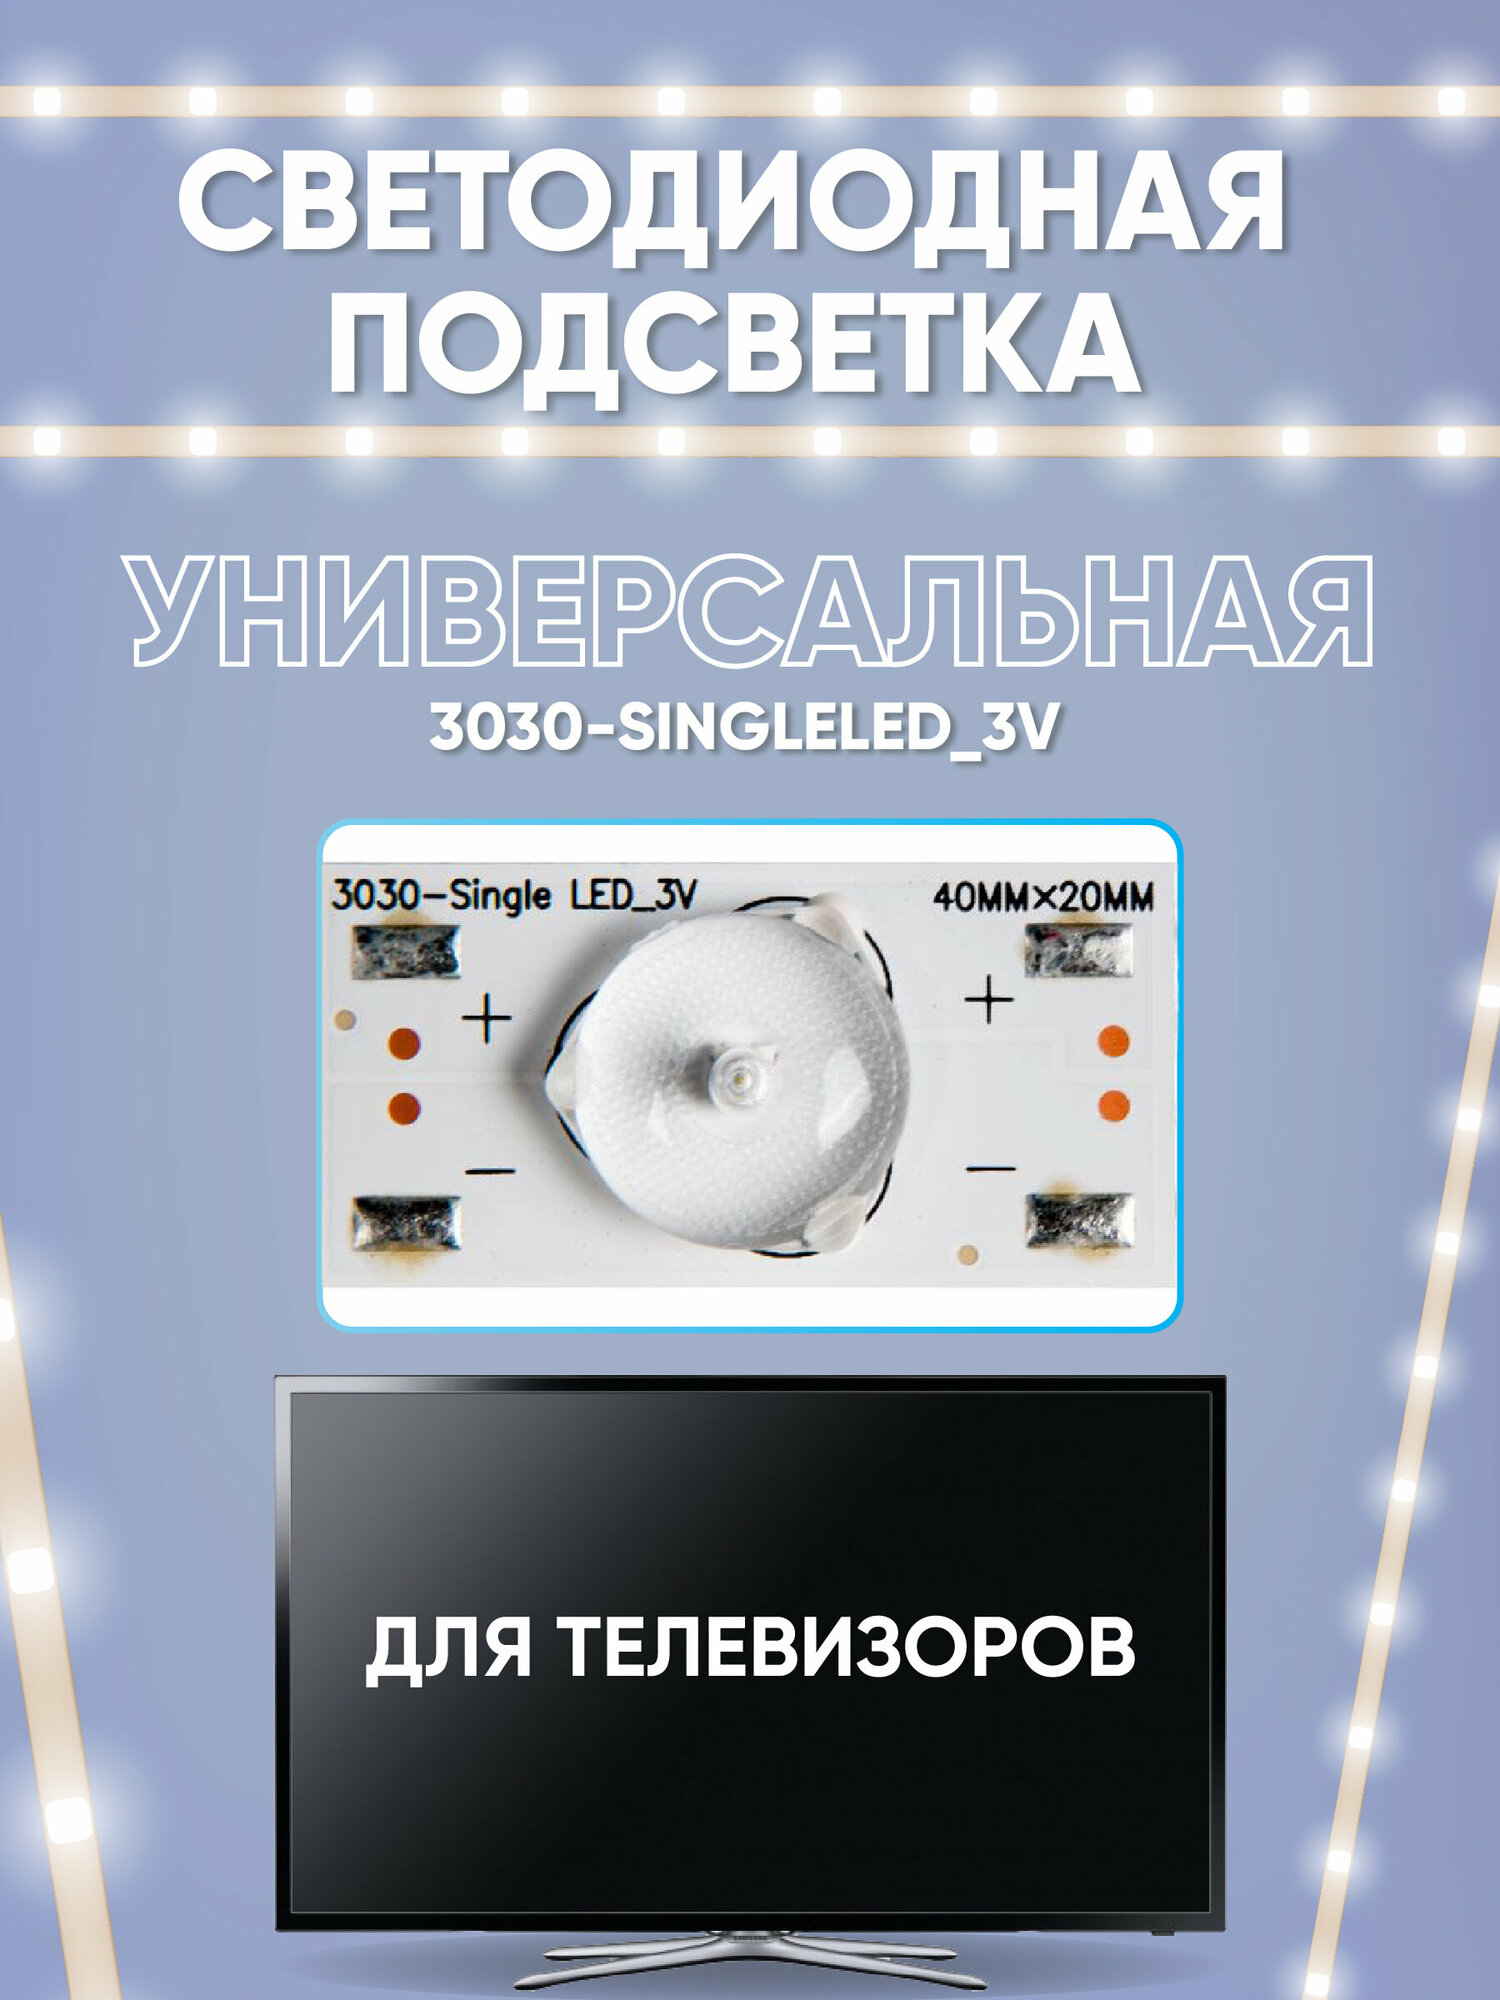 Светодиодная подсветка для телевизоров универсальная (3 В), 3030-SingleLED_3V